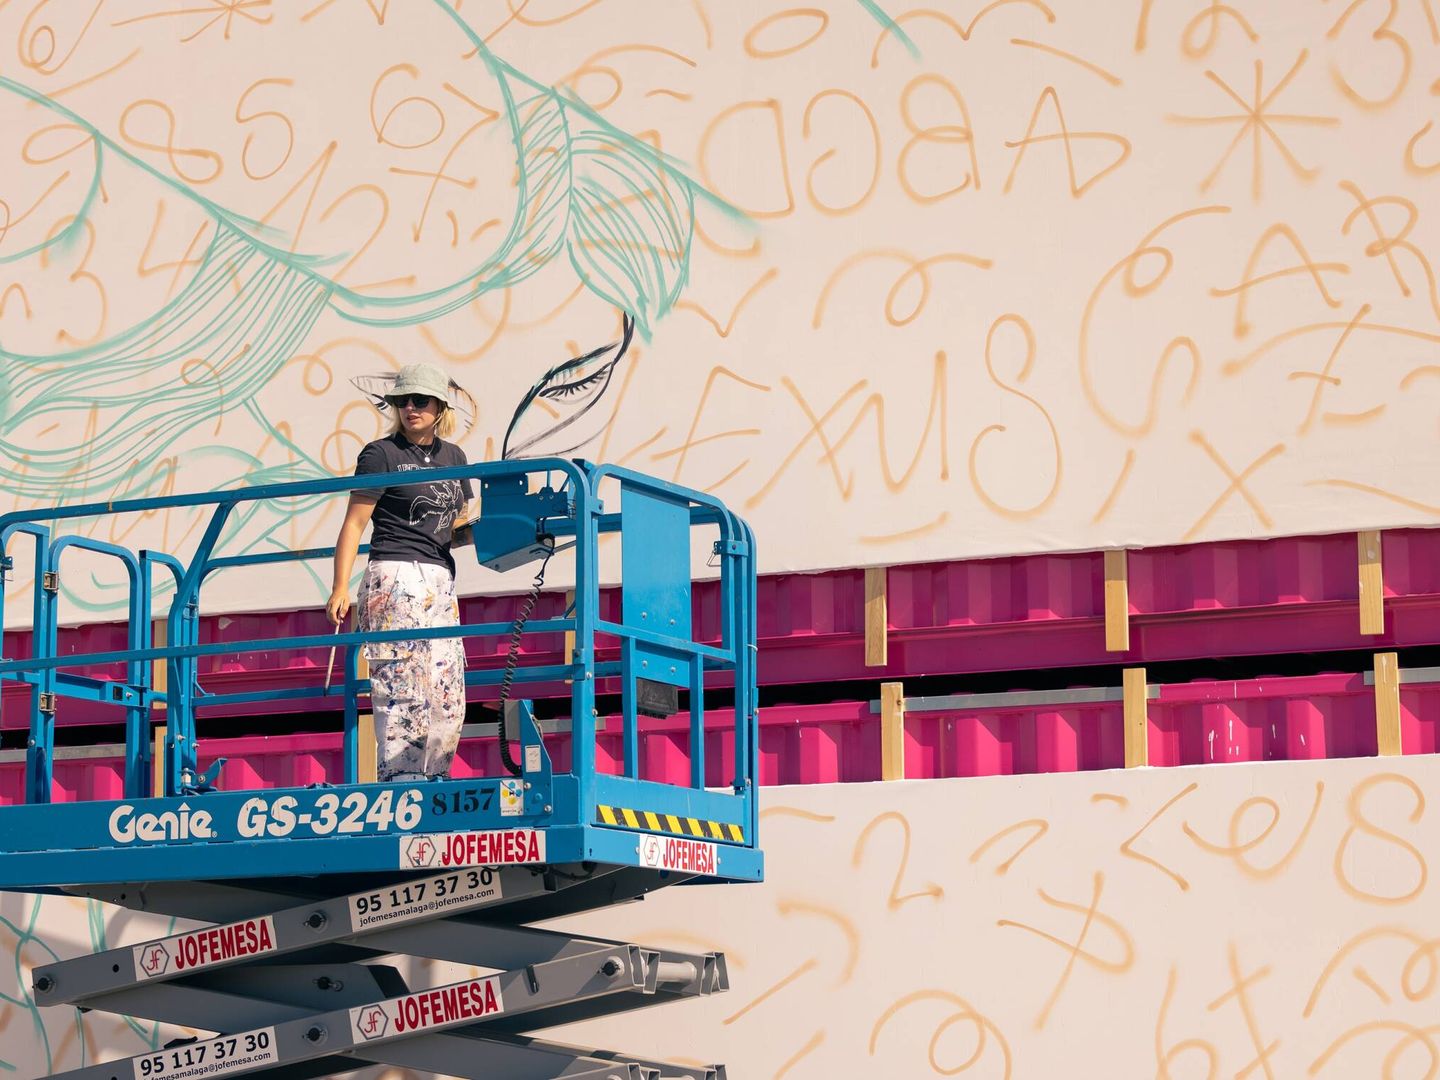 Entre las creaciones artísticas, destaca el gran mural que presidirá una de las zonas del ADN Forum.